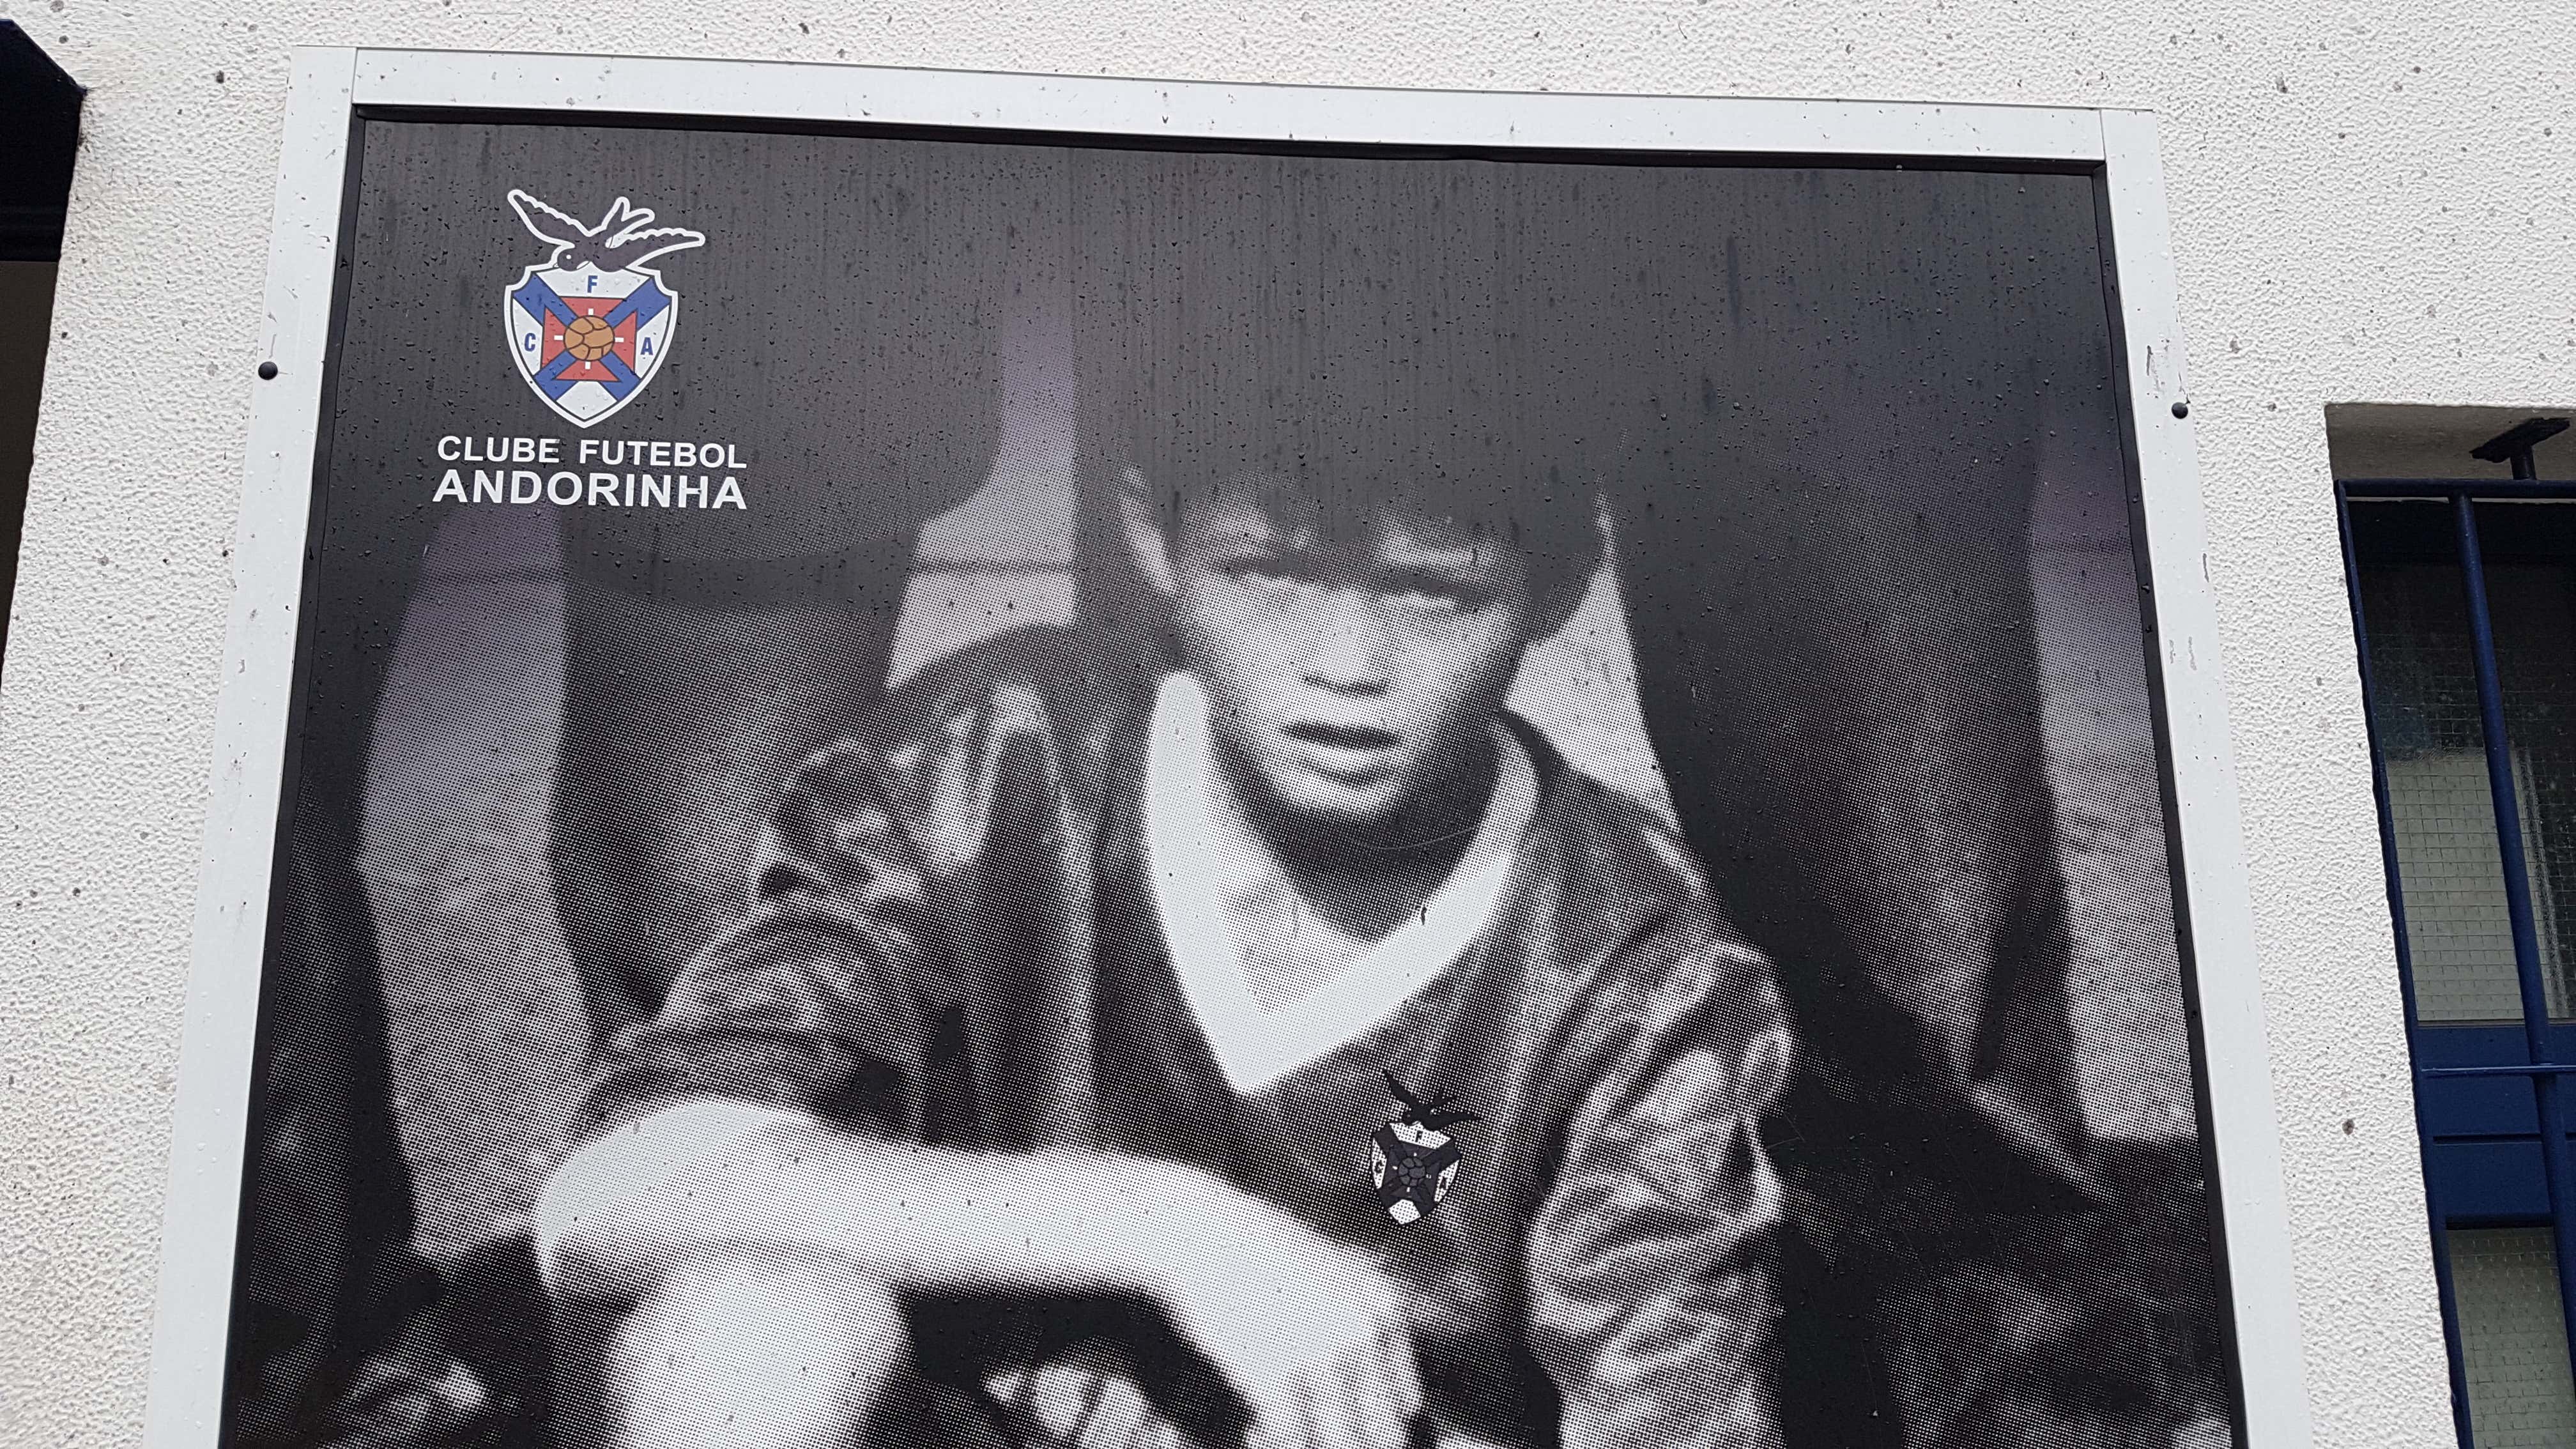 Madeira Andorinha Cristiano Ronaldo first club